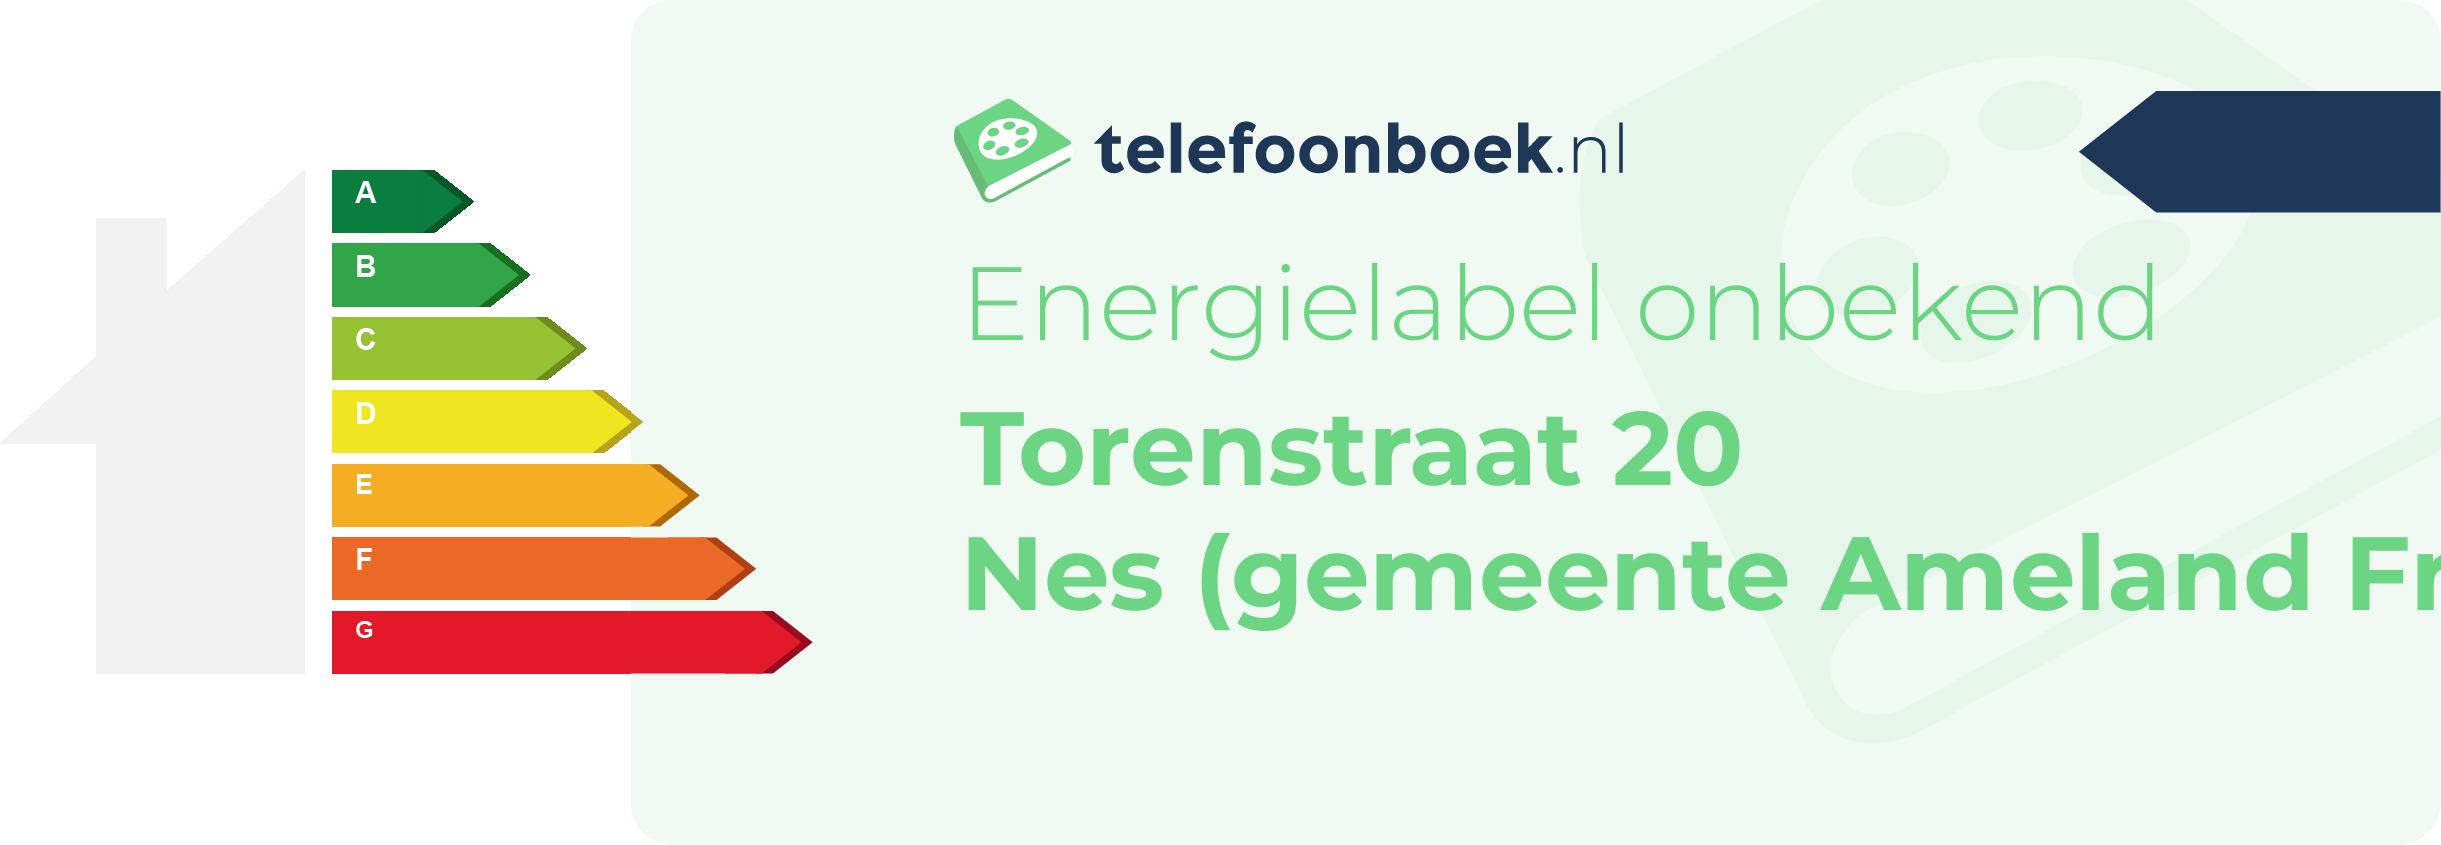 Energielabel Torenstraat 20 Nes (gemeente Ameland Friesland)